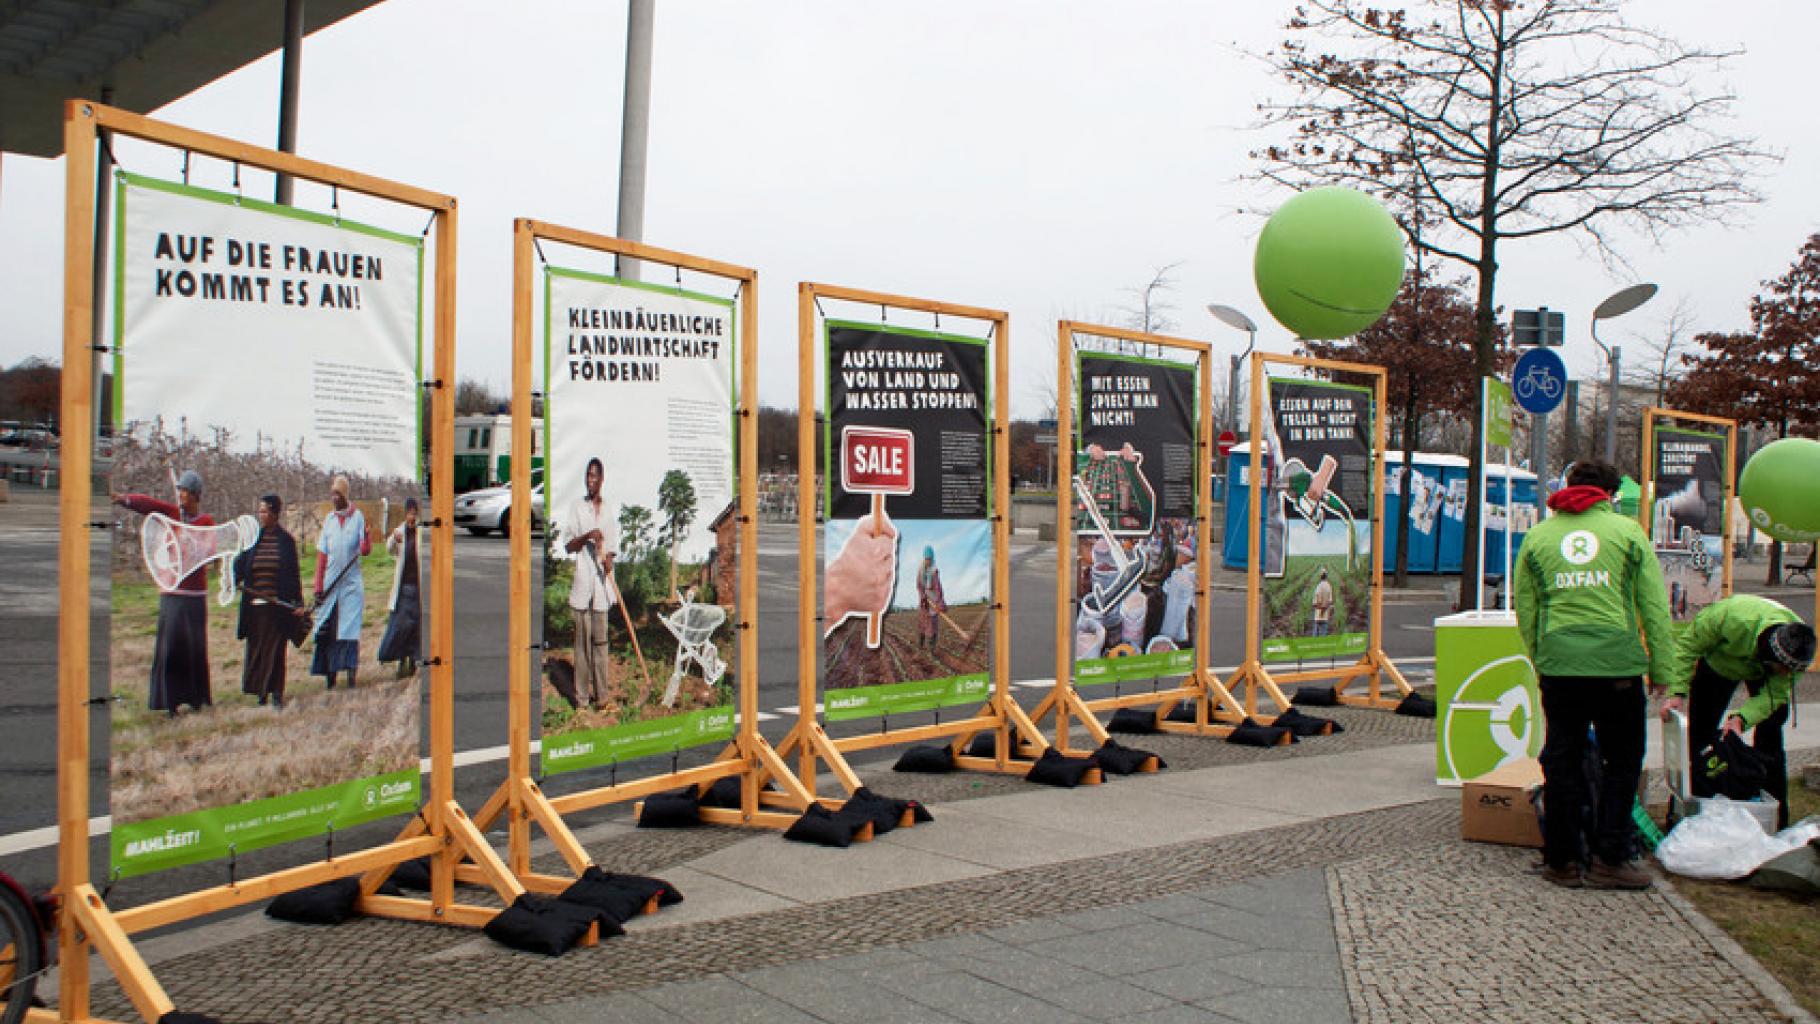 Oxfam Deutschland auf der Demonstration "Wir haben es satt!"